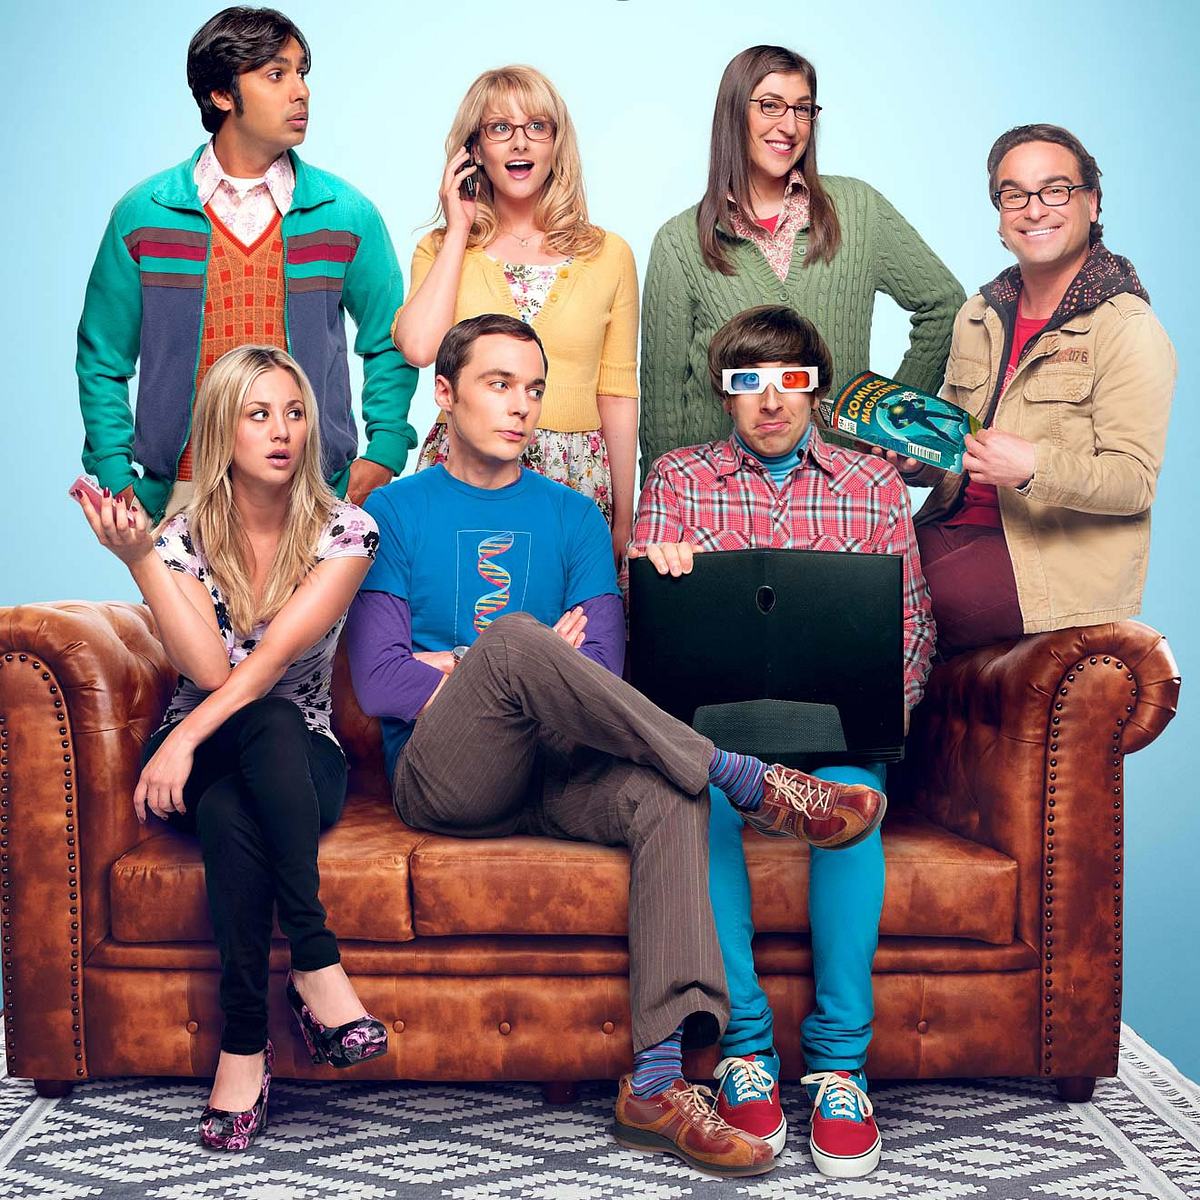 Lustige Serien zum Lachen: Das sind die beliebtesten Comedy-Shows Big Bang Theory